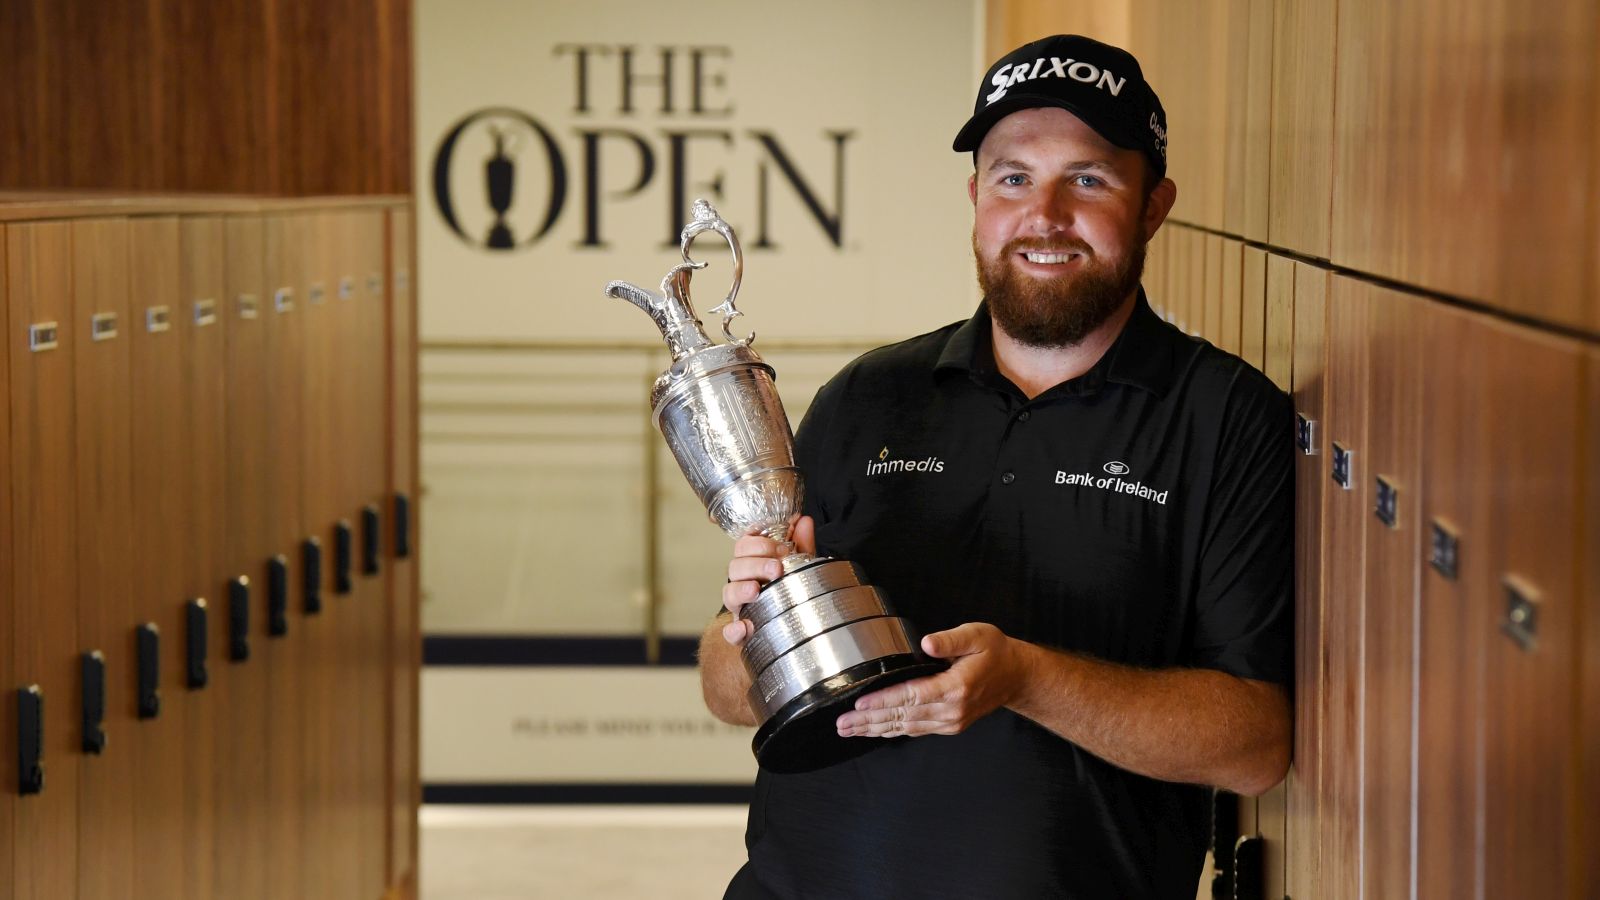 2019 - Lowry gewinnt mit der Open Championship sein erstes Major und wird Golfer des Jahres. © Warren Little/Getty Images